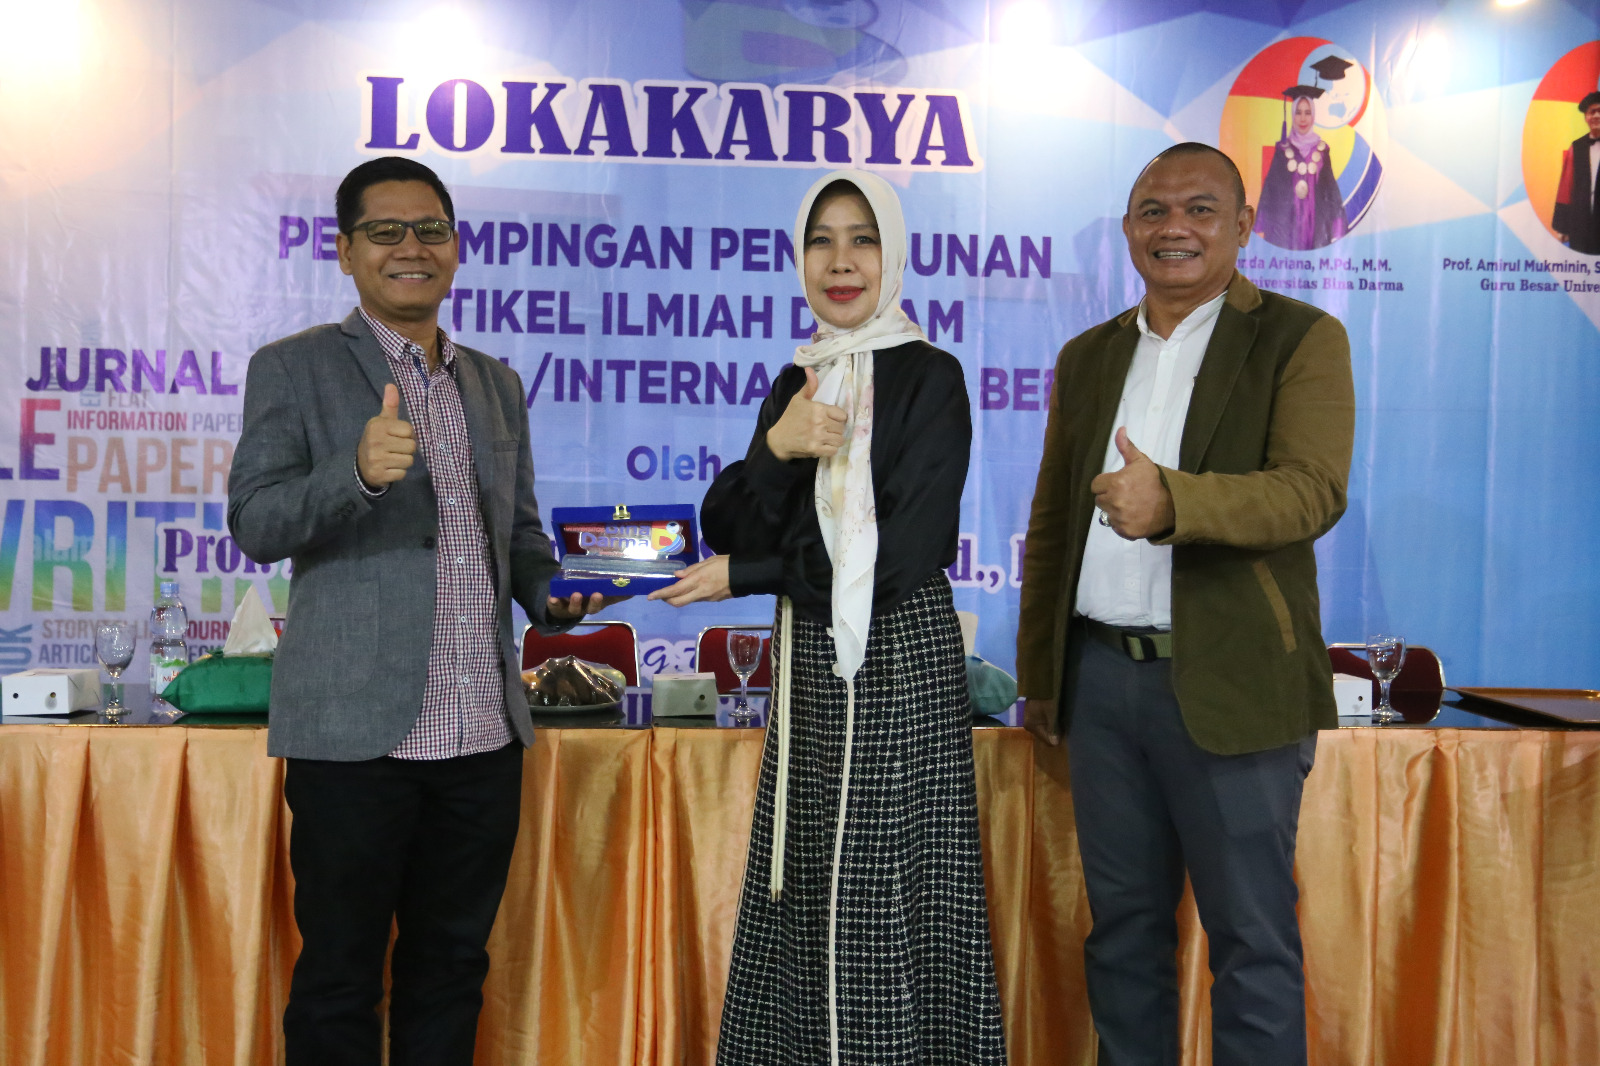 Universitas Bina Darma Palembang Gelar Lomba Tulis Artikel Ilmiah